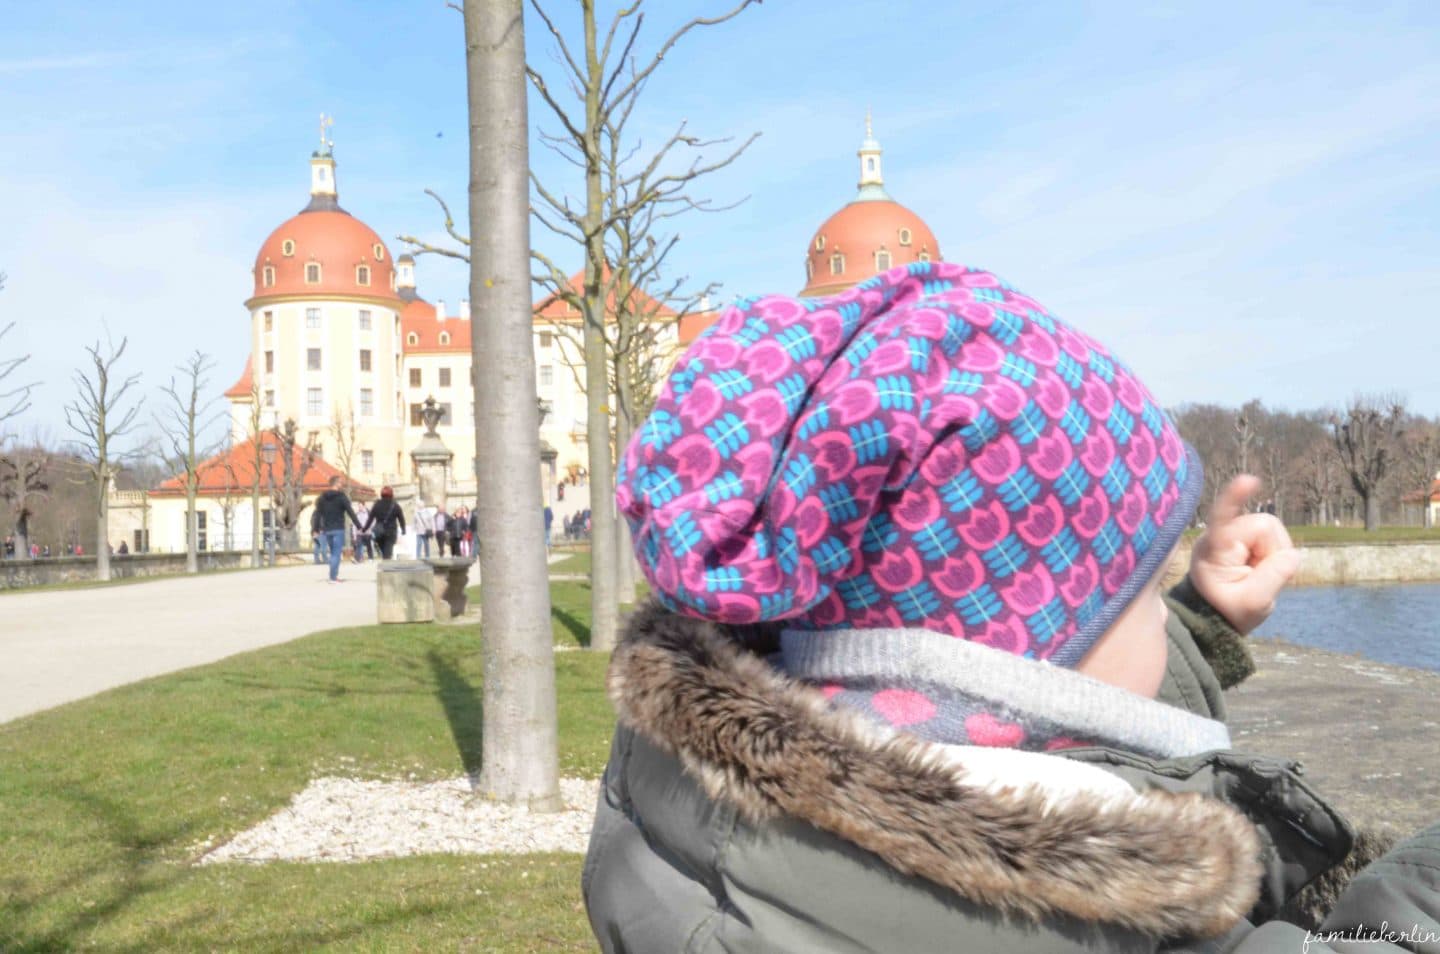 Ausflugstipps: Dresden mit Kleinkind